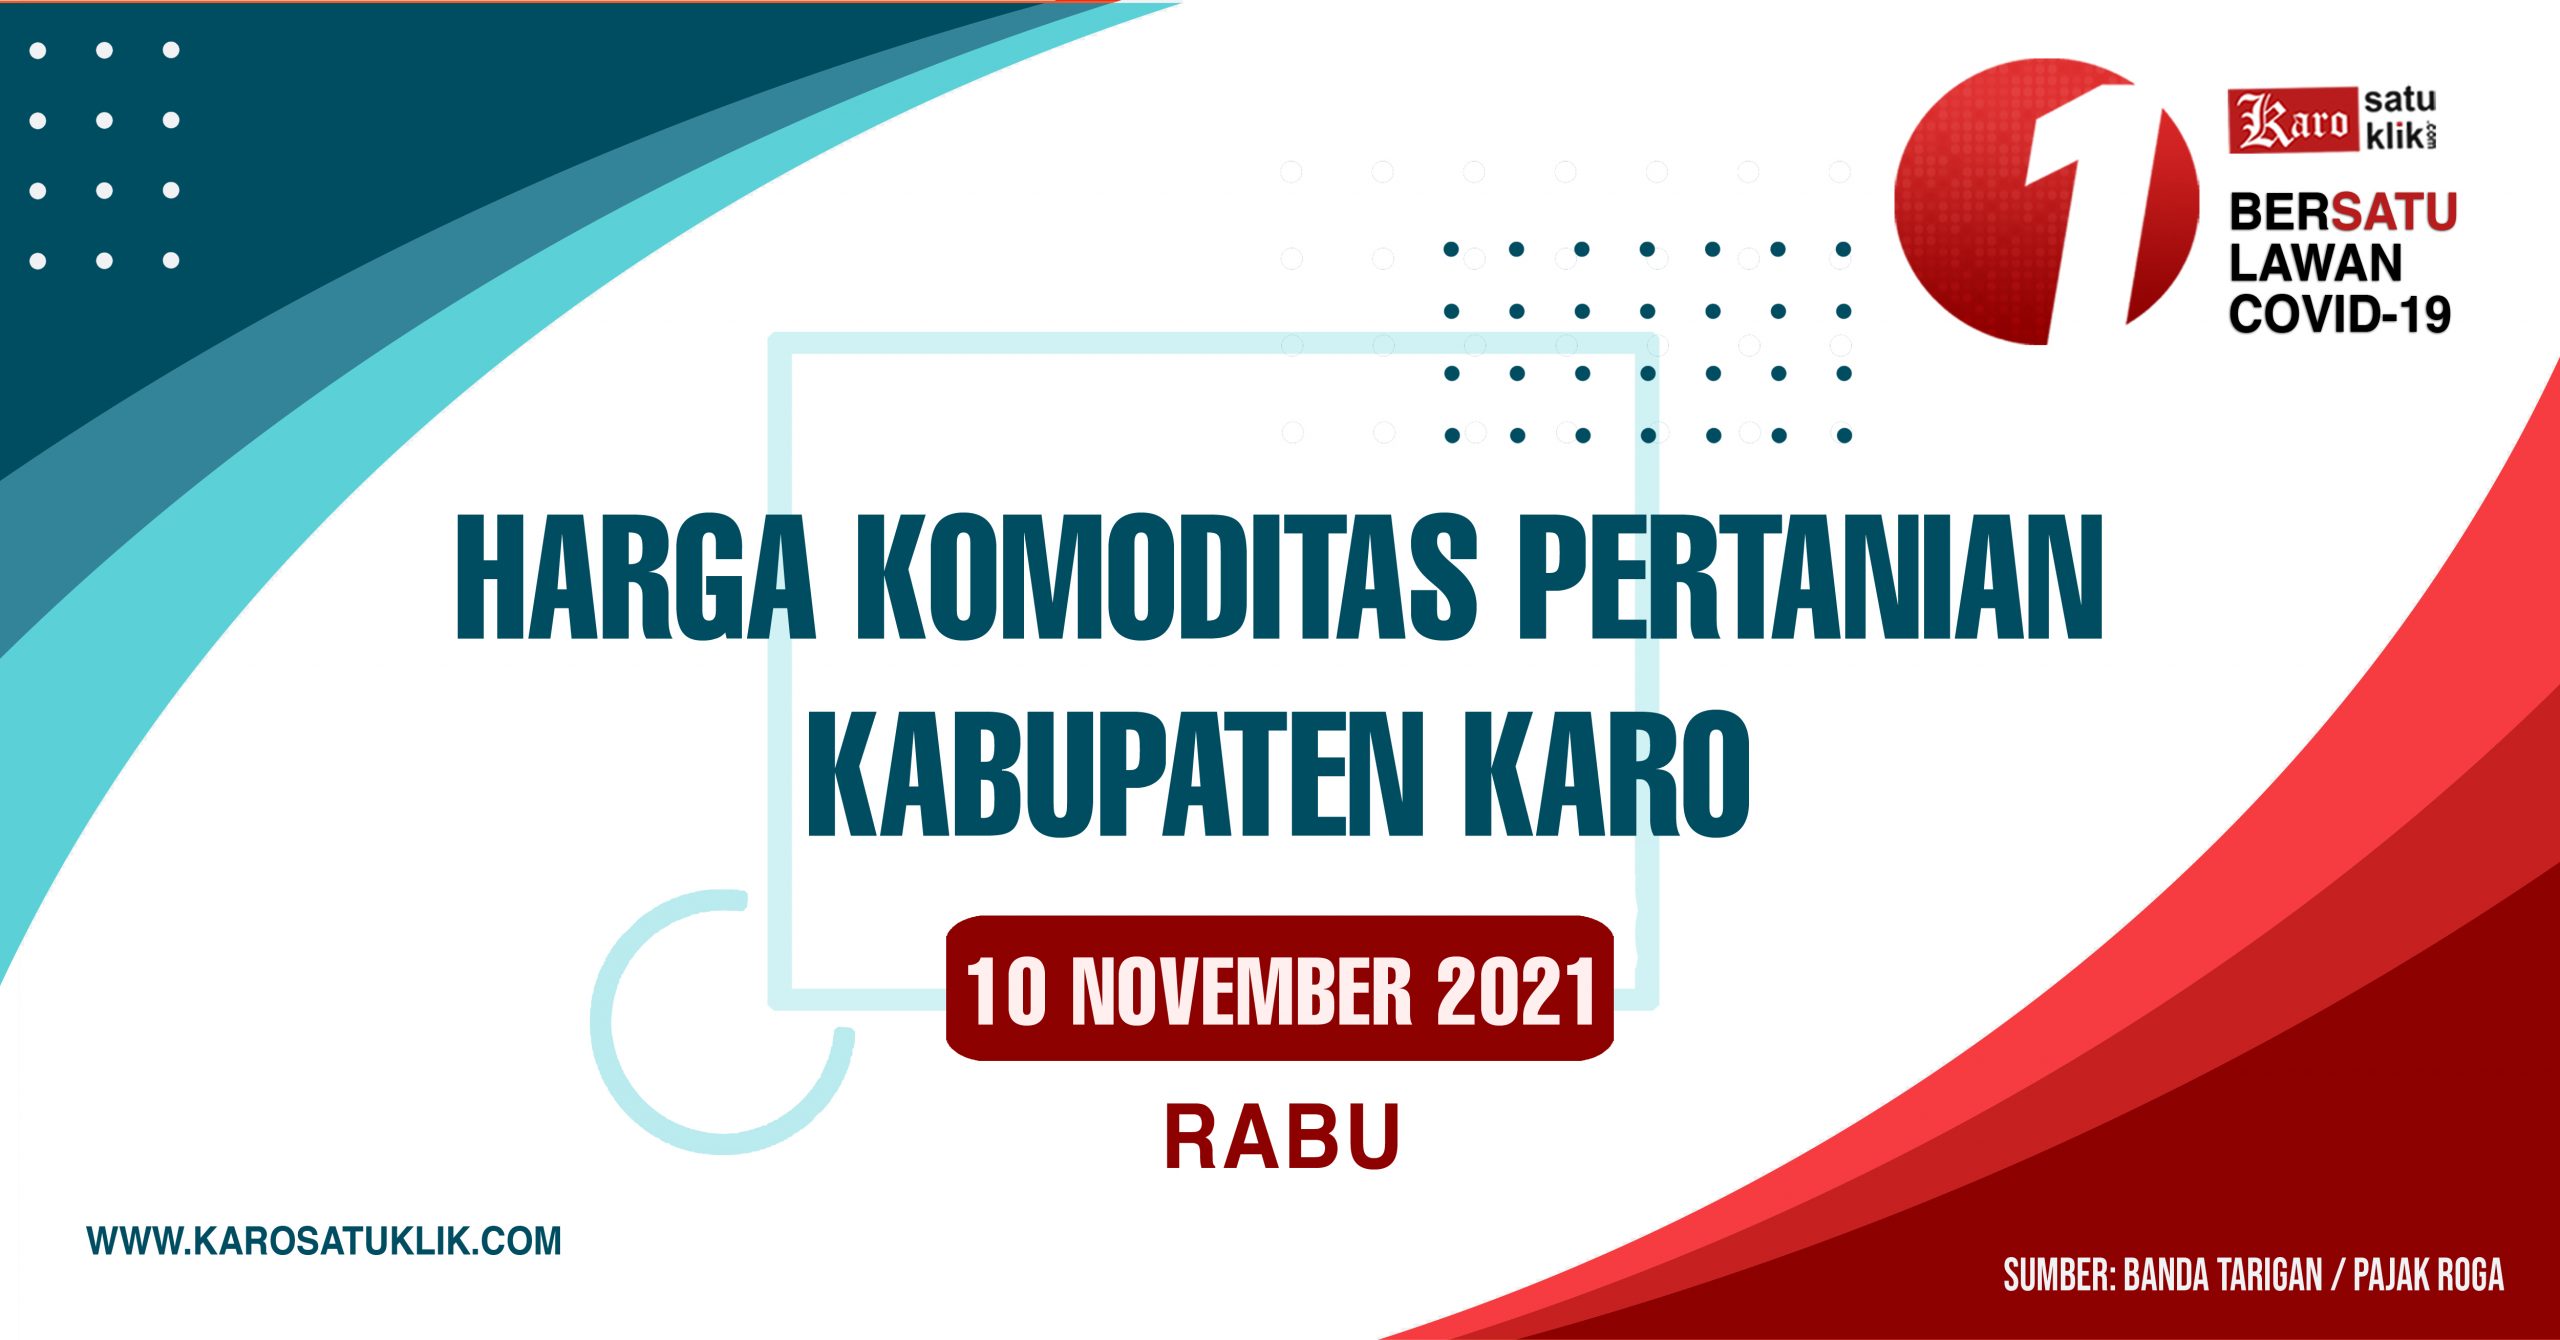 Daftar Harga Komoditas Pertanian Kabupaten Karo, 10 November 2021